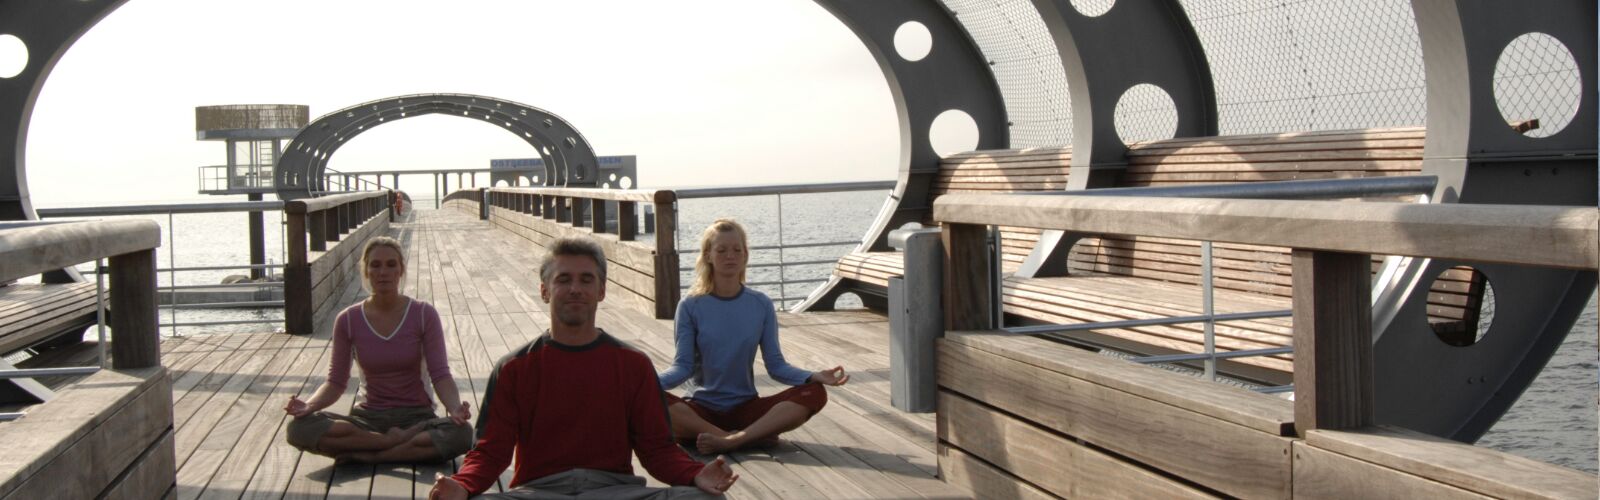 Man sieht einen Mann und zwei Frauen die auf der Kellenhusener Seebrücke sitzen, im typischen Yoga Sitz.